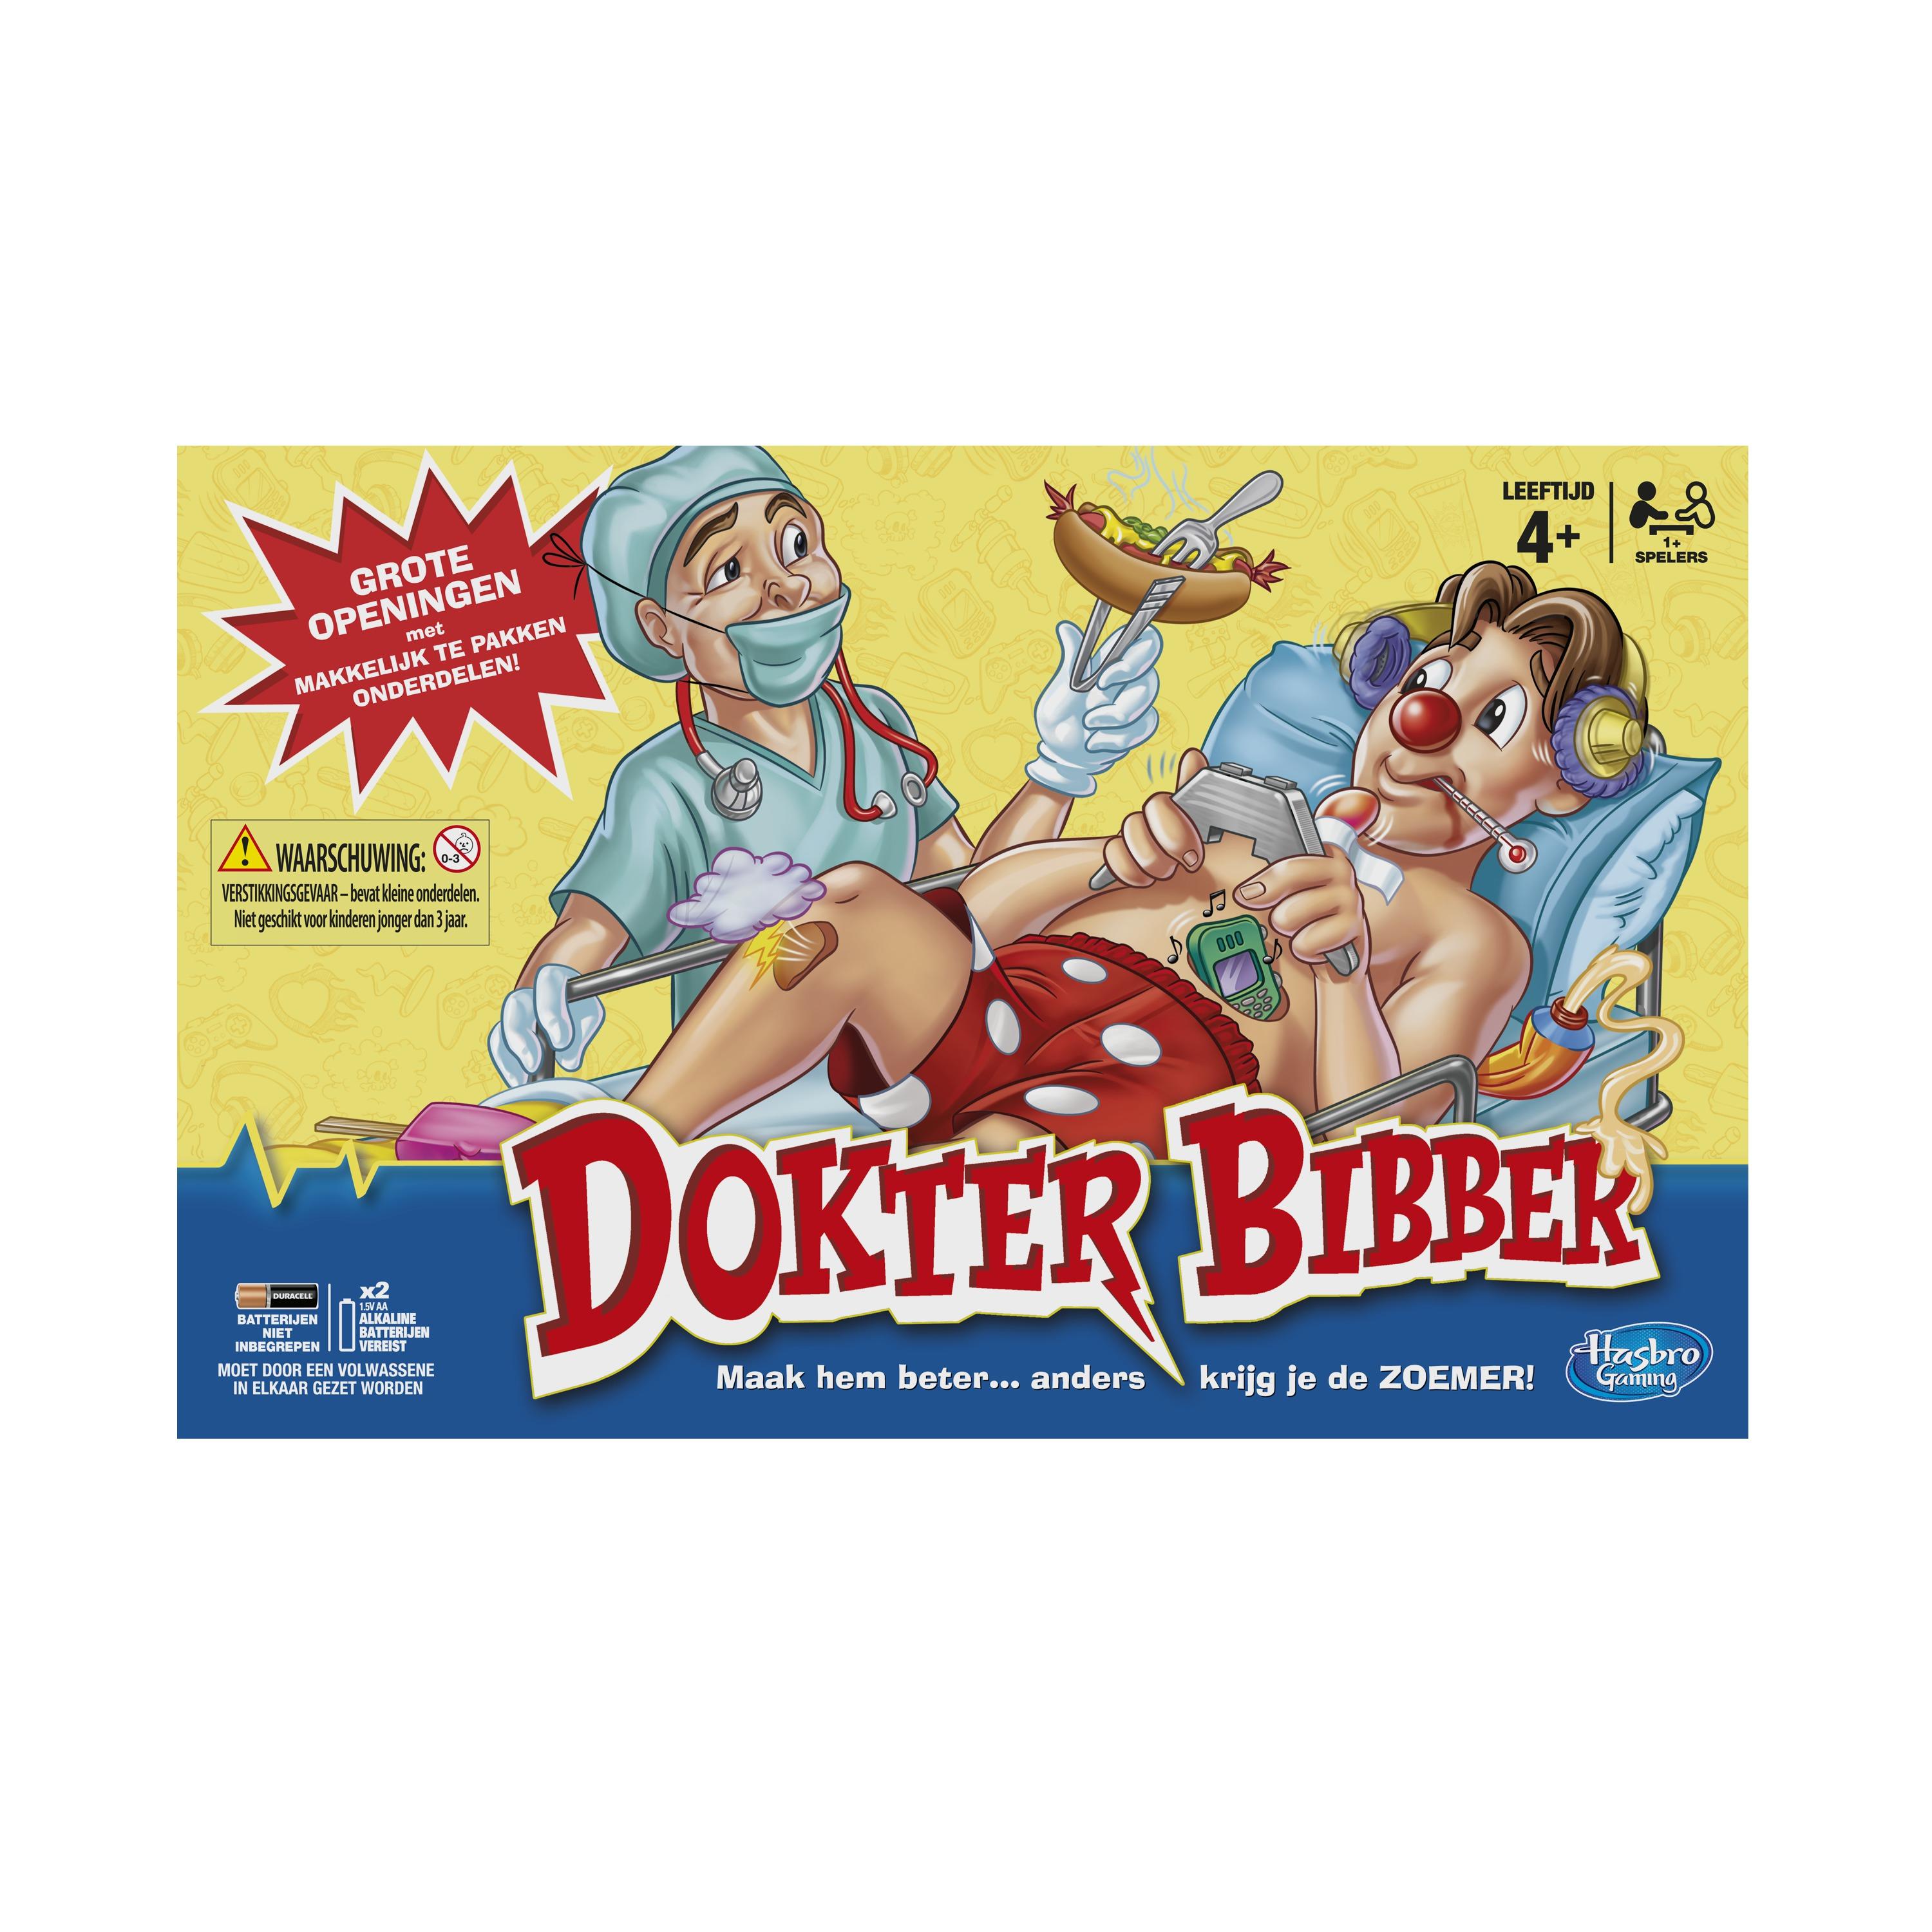 Necklet Per laten we het doen Dokter Bibber - Hasbro Games